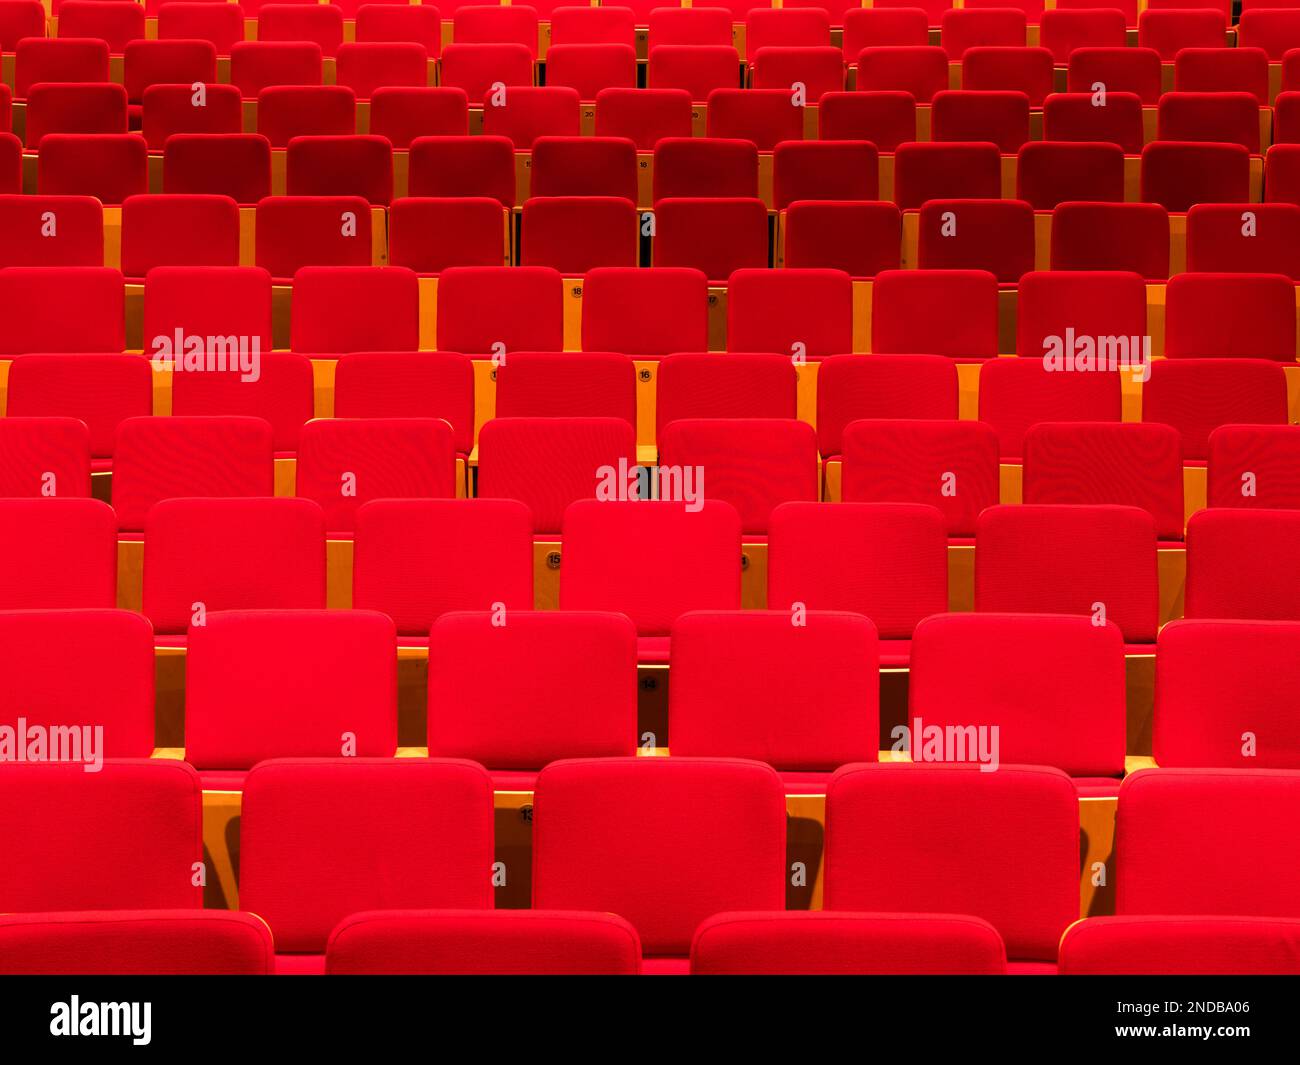 Royaume-Uni, Manchester, rangées de sièges rouges vides dans un auditorium Banque D'Images